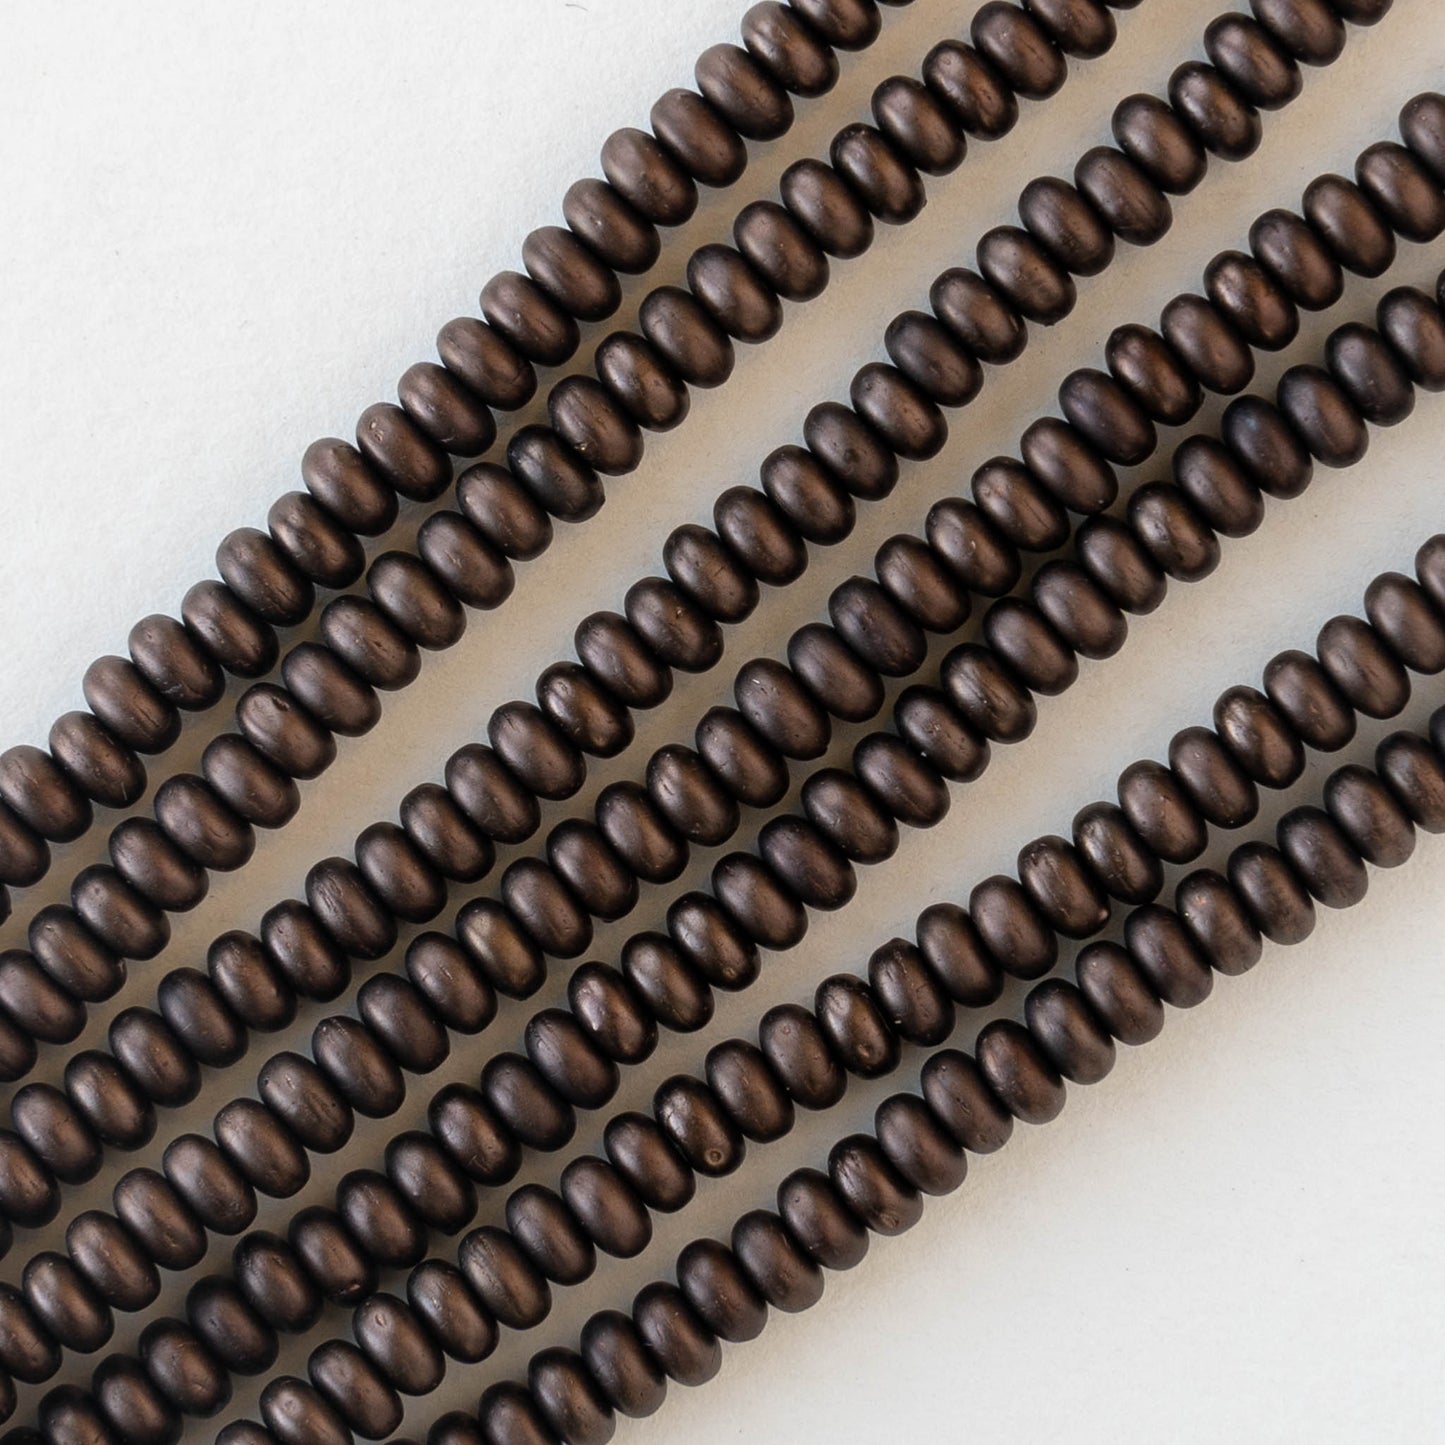 3mm Rondelle Beads - Dark Bronze Matte - 100 Beads